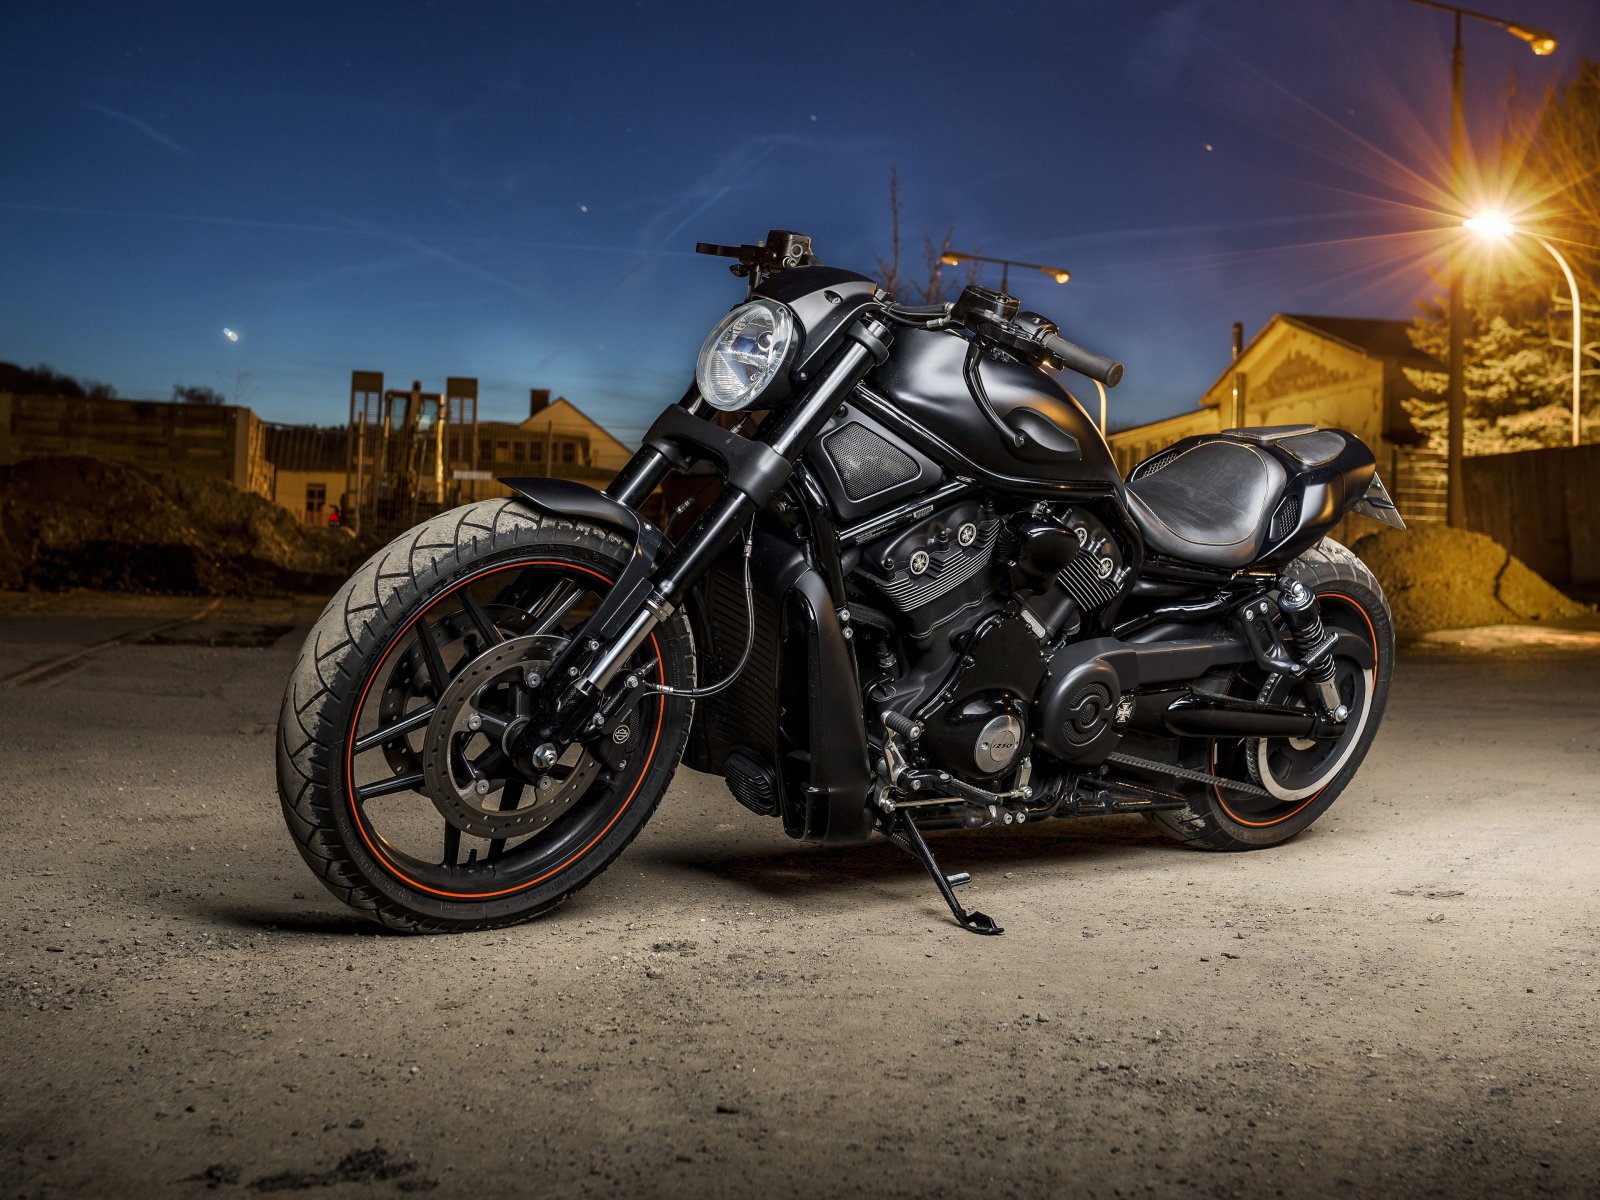 Мощный черный мотоцикл Harley Davidson стоит на улице с фонарем